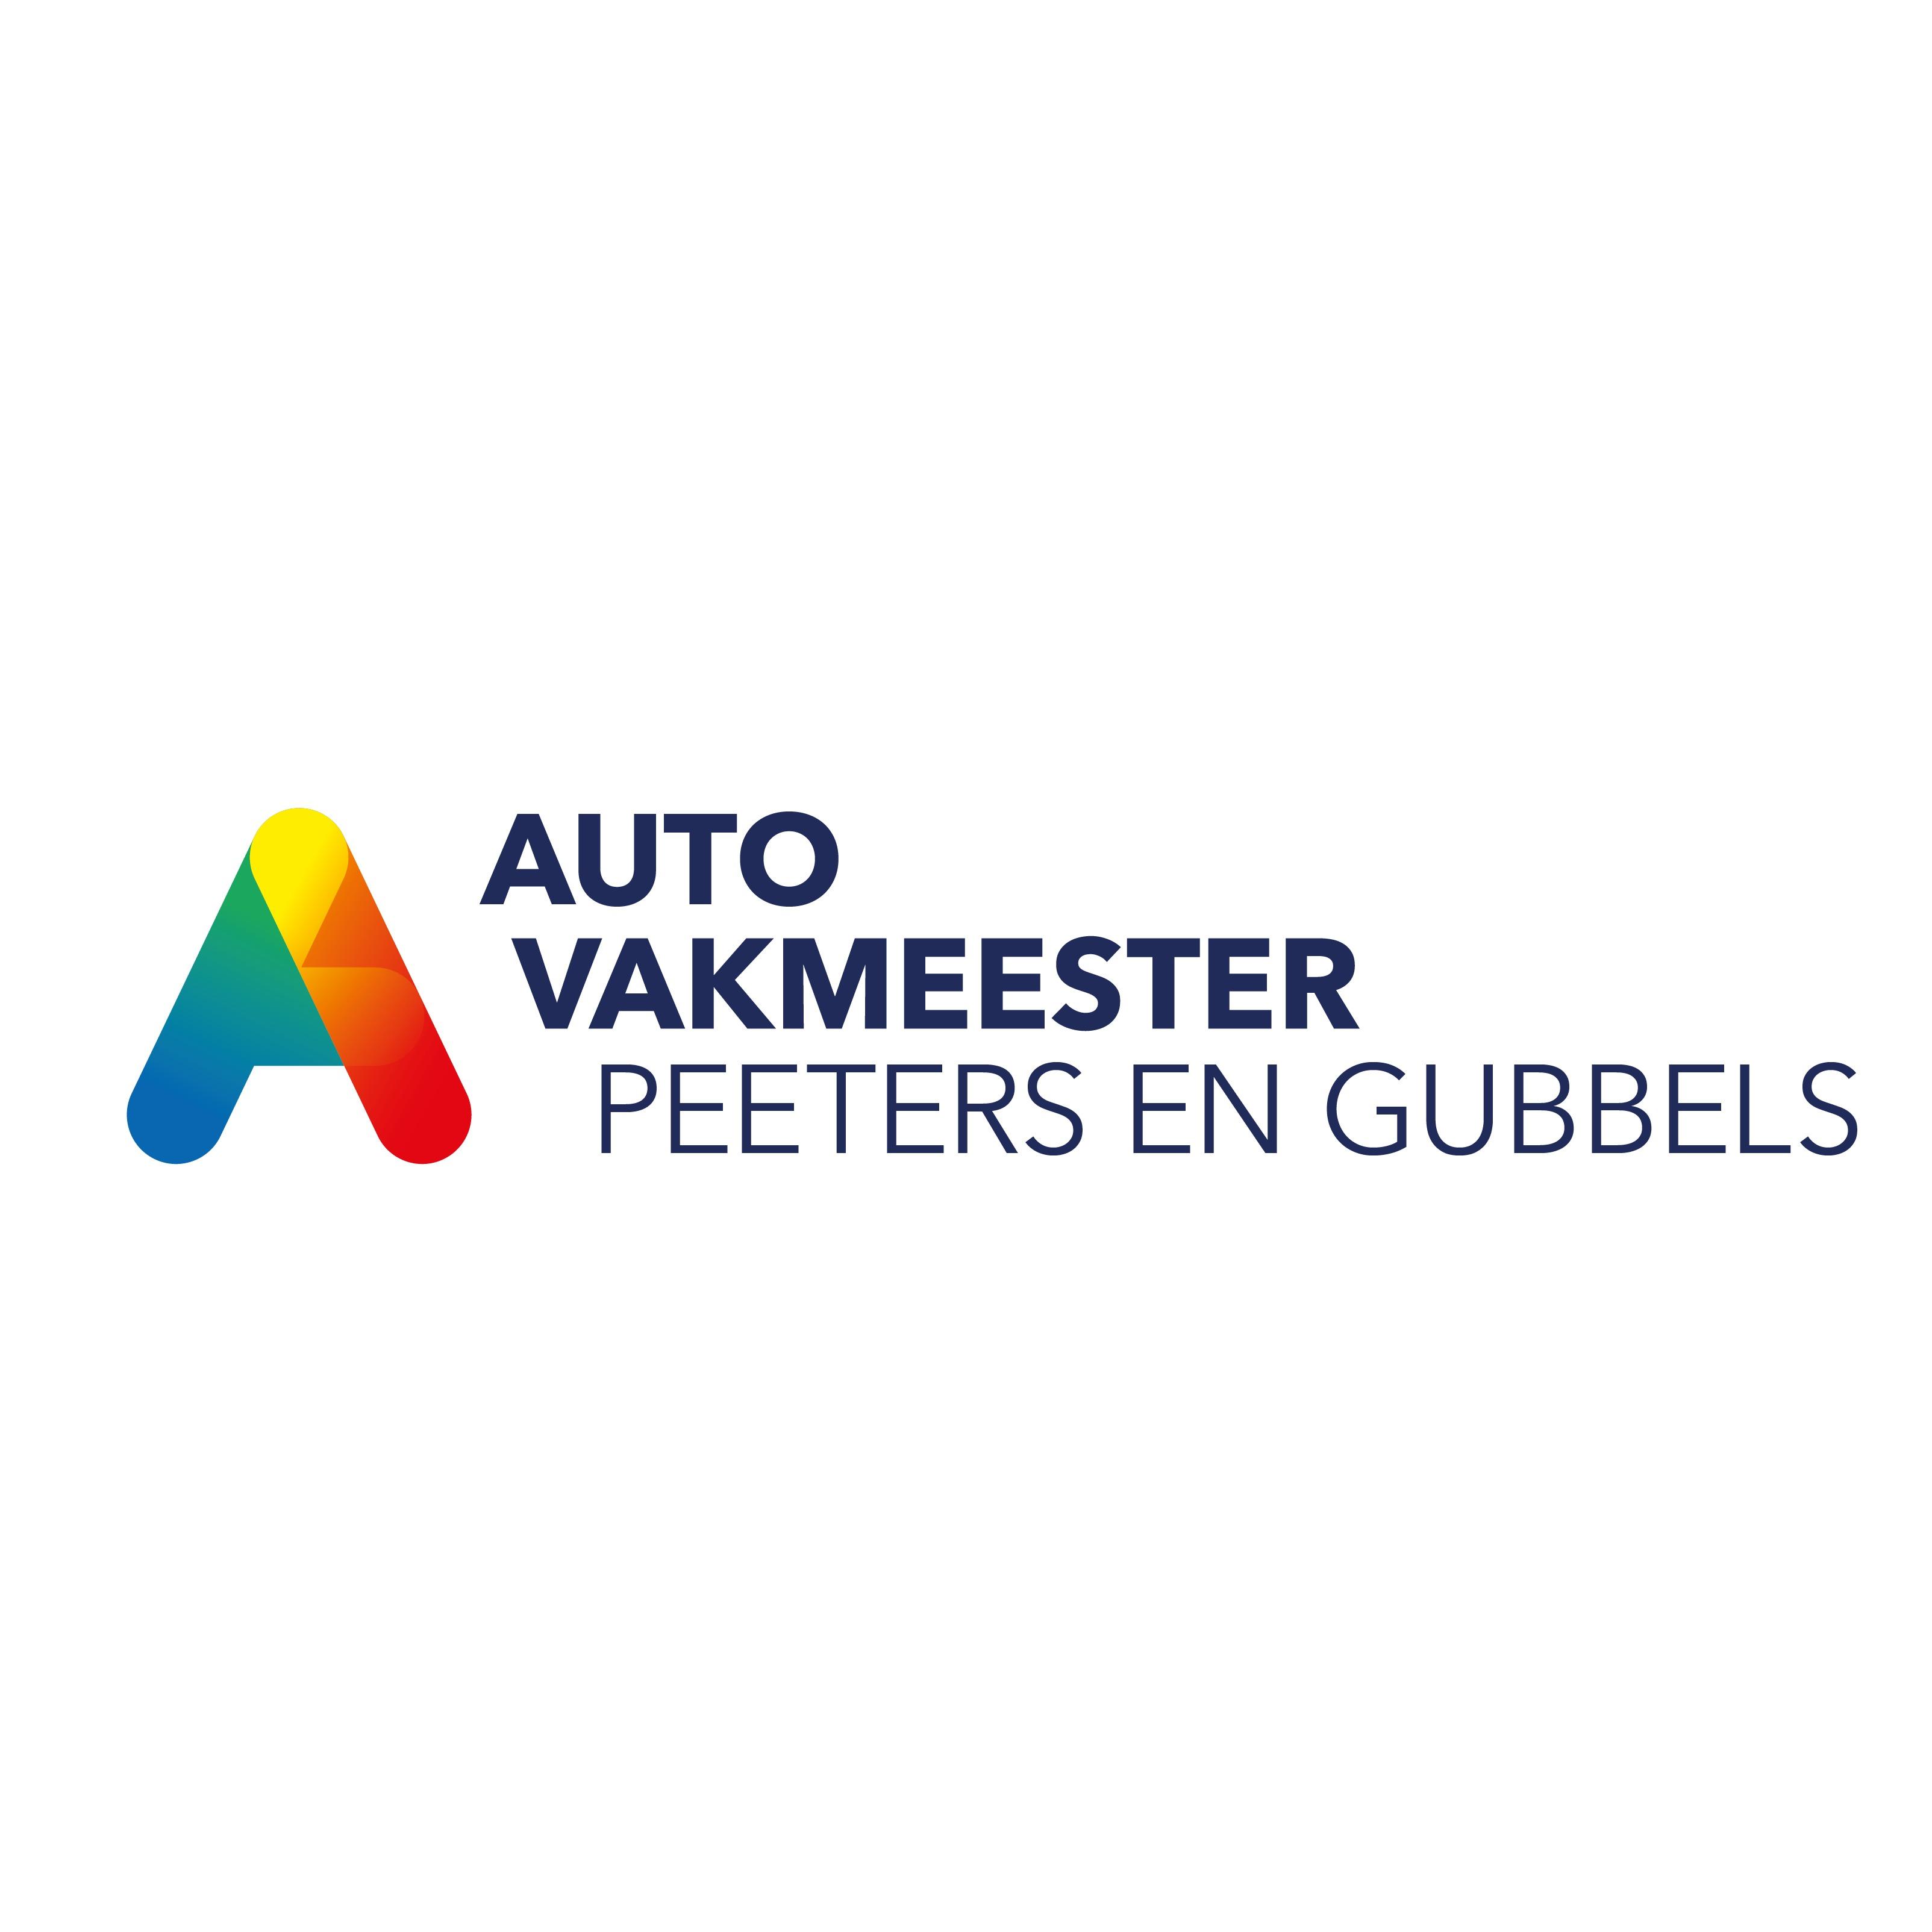 Autovakmeester Peeters en Gubbels Logo